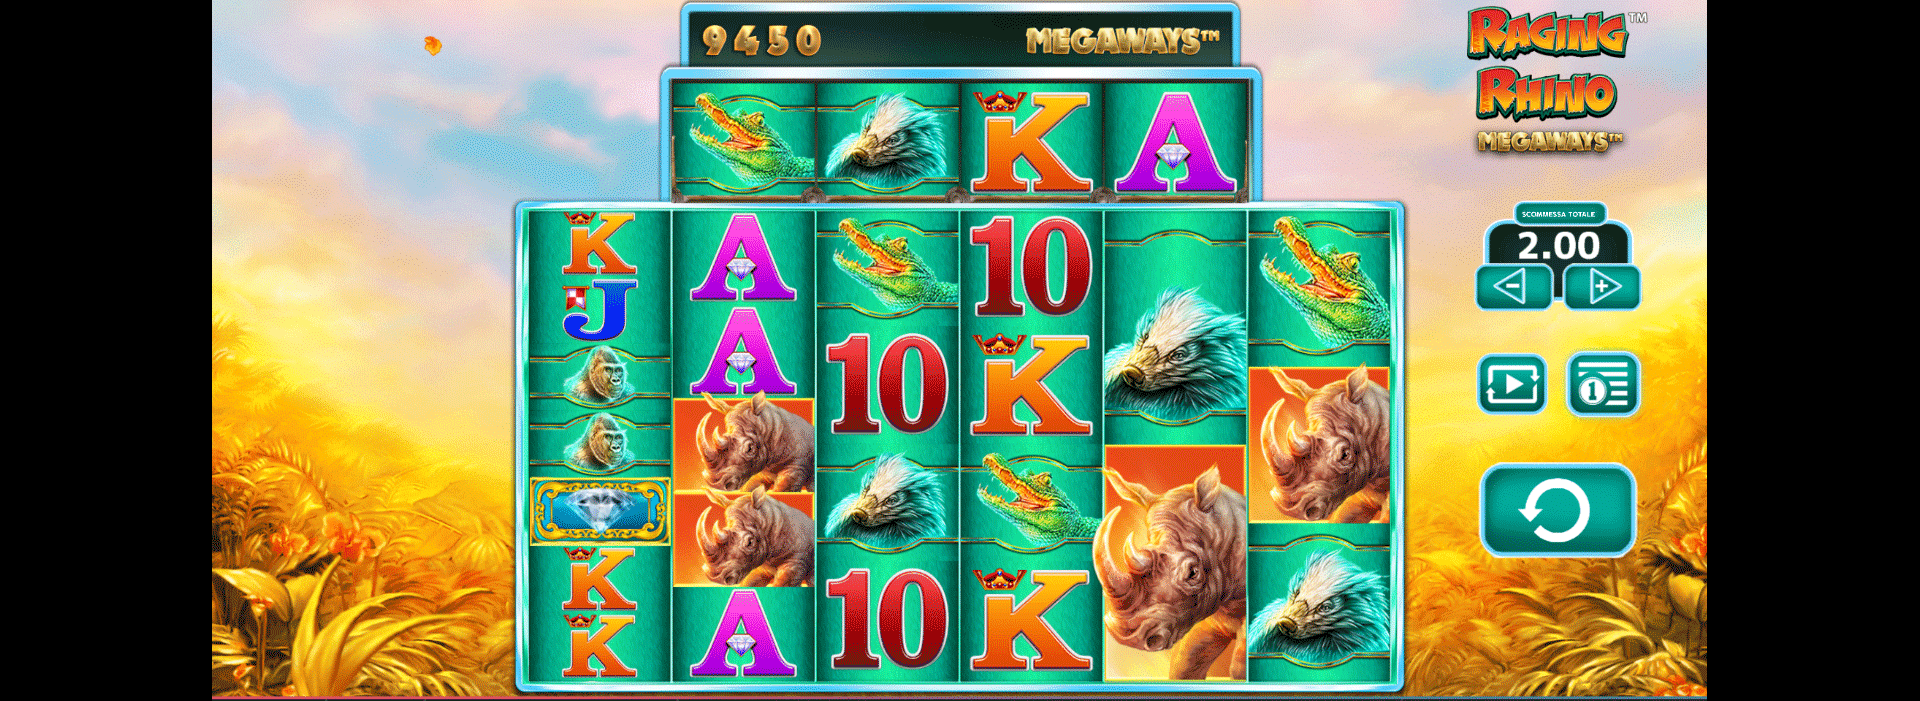 schermata slot machine raging rhino megaways